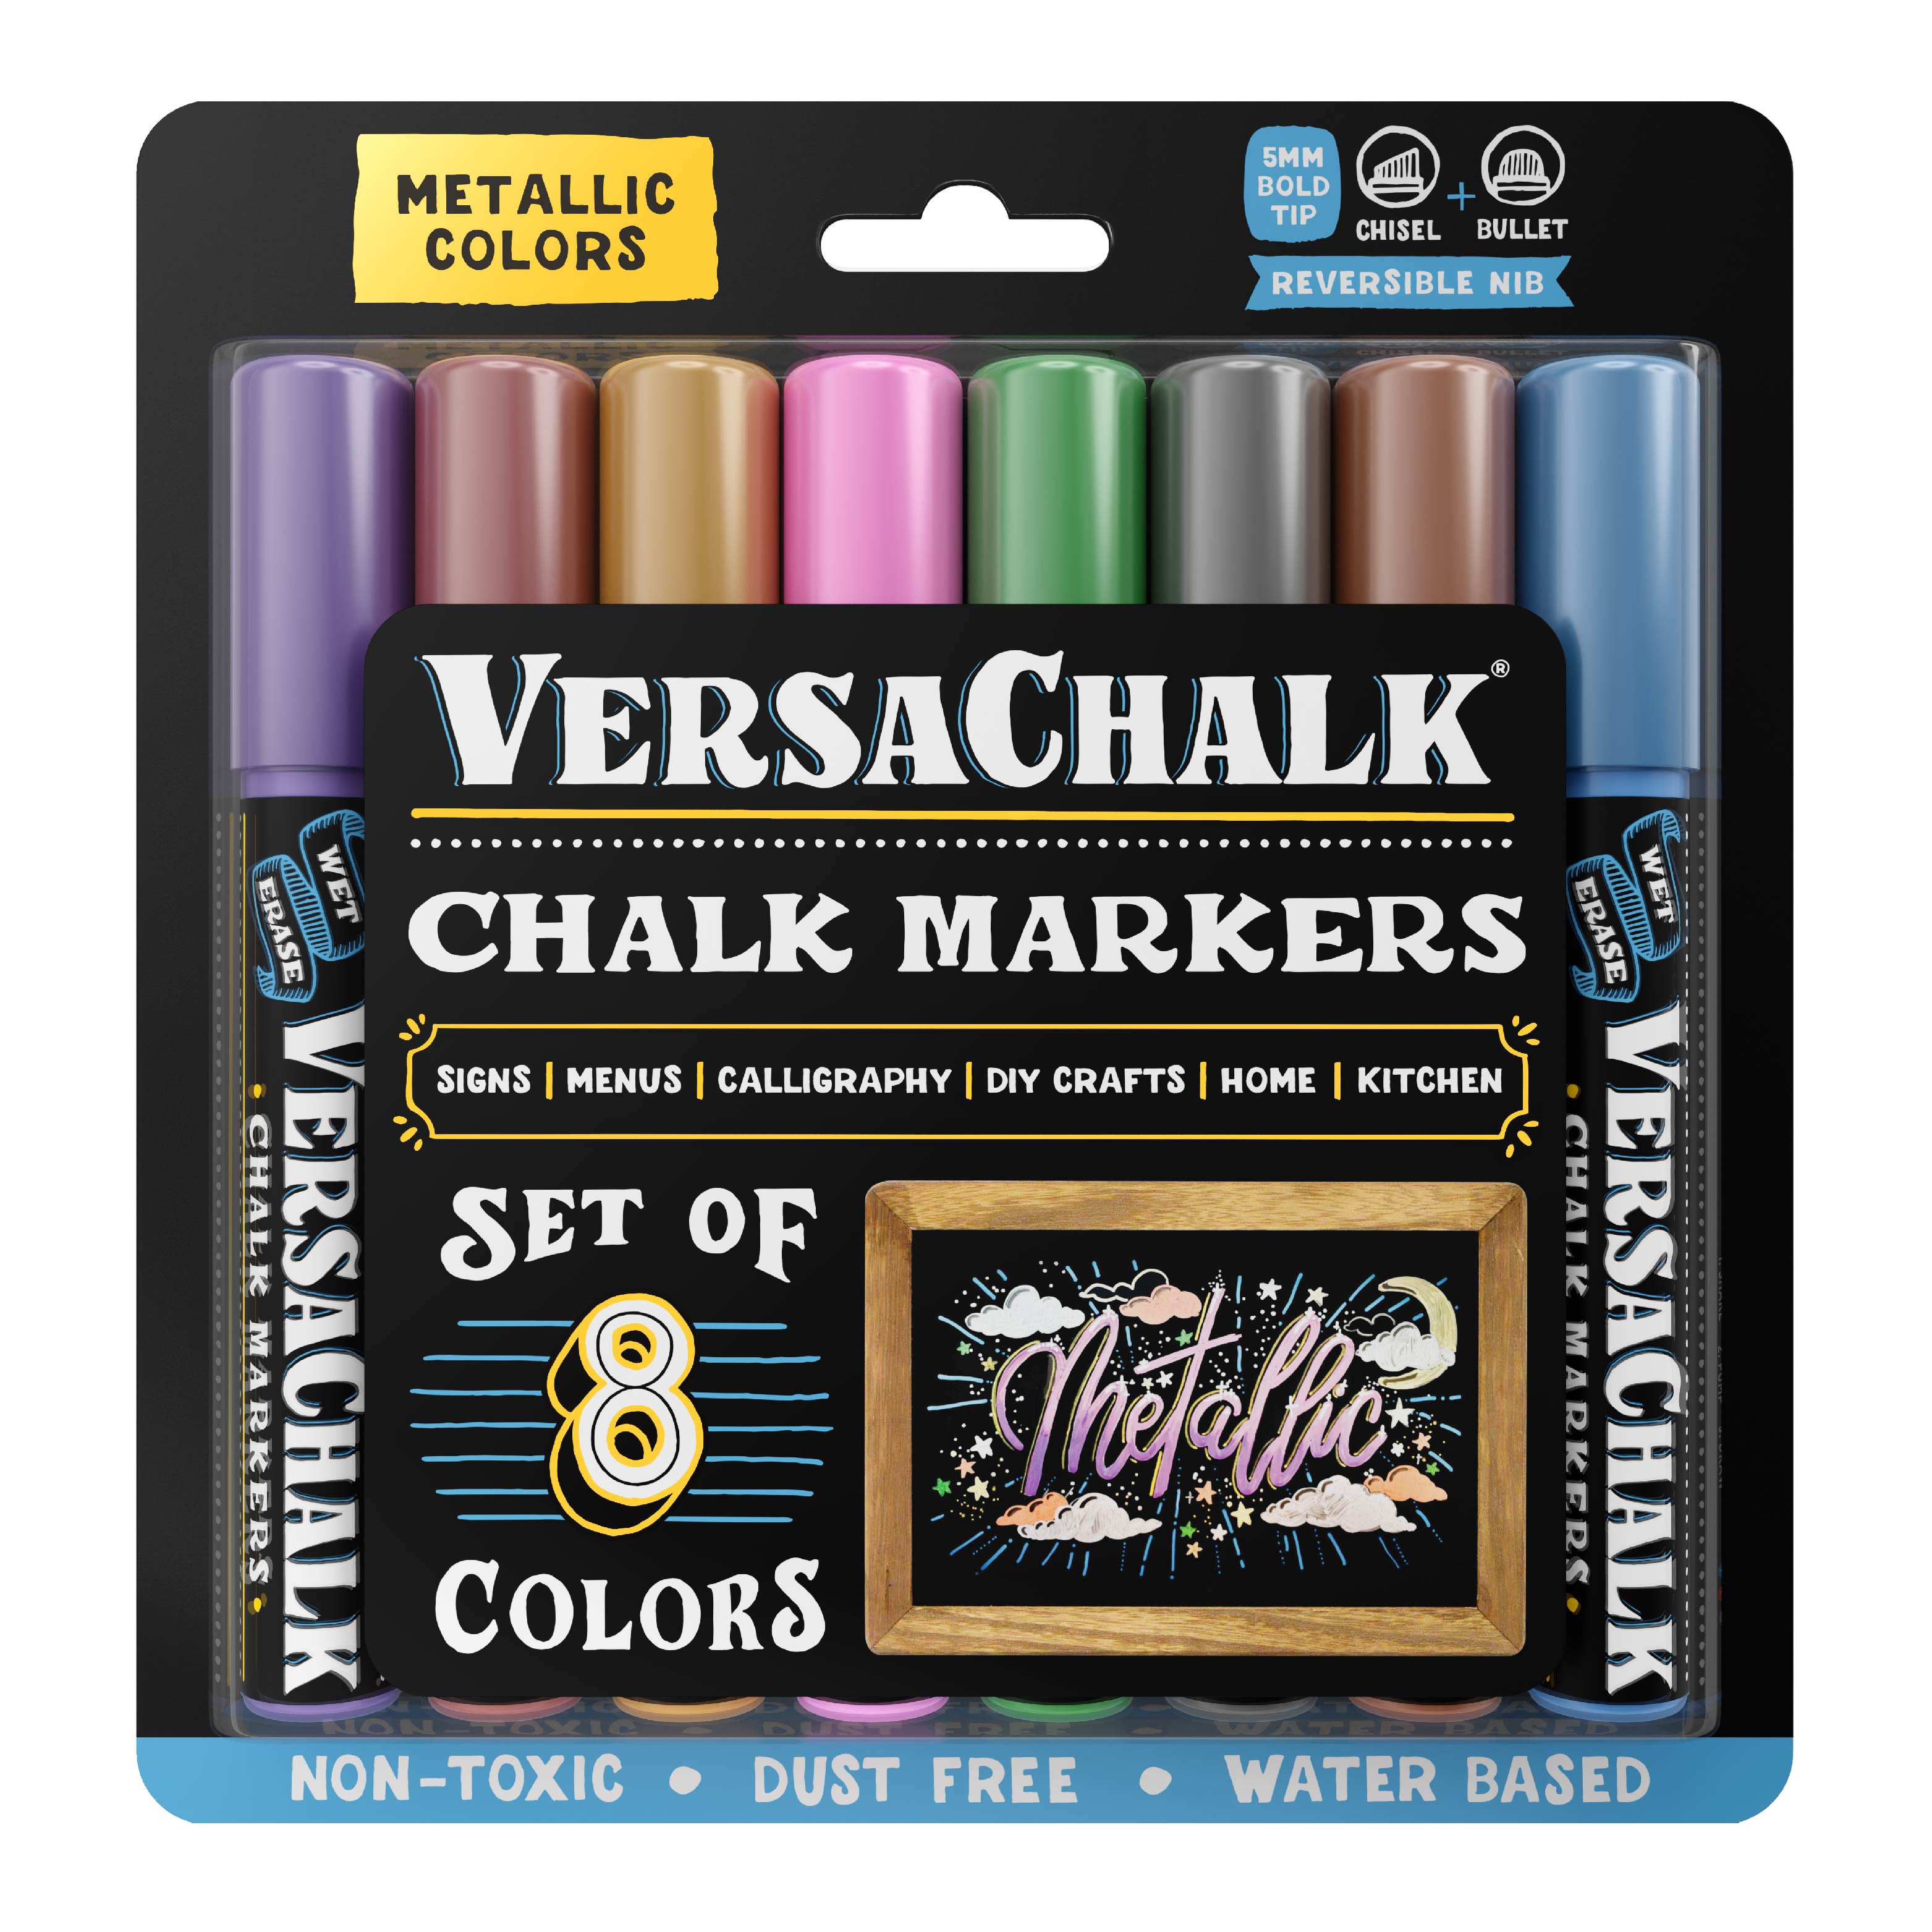 915 Generation 4PC Liquid Chalk Pen Marker For Glass Windows Chalkboard